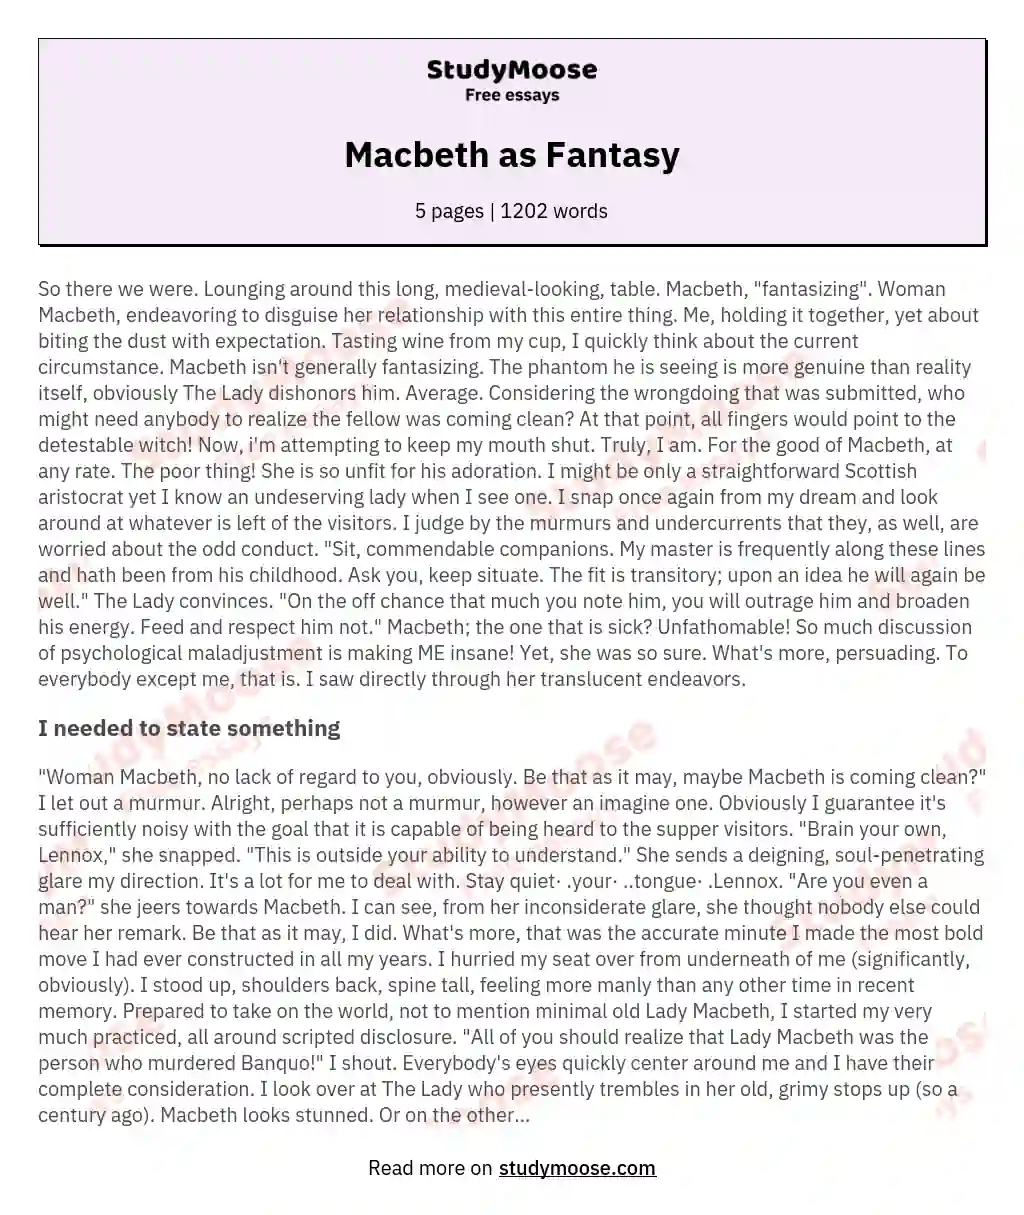 Macbeth as Fantasy essay